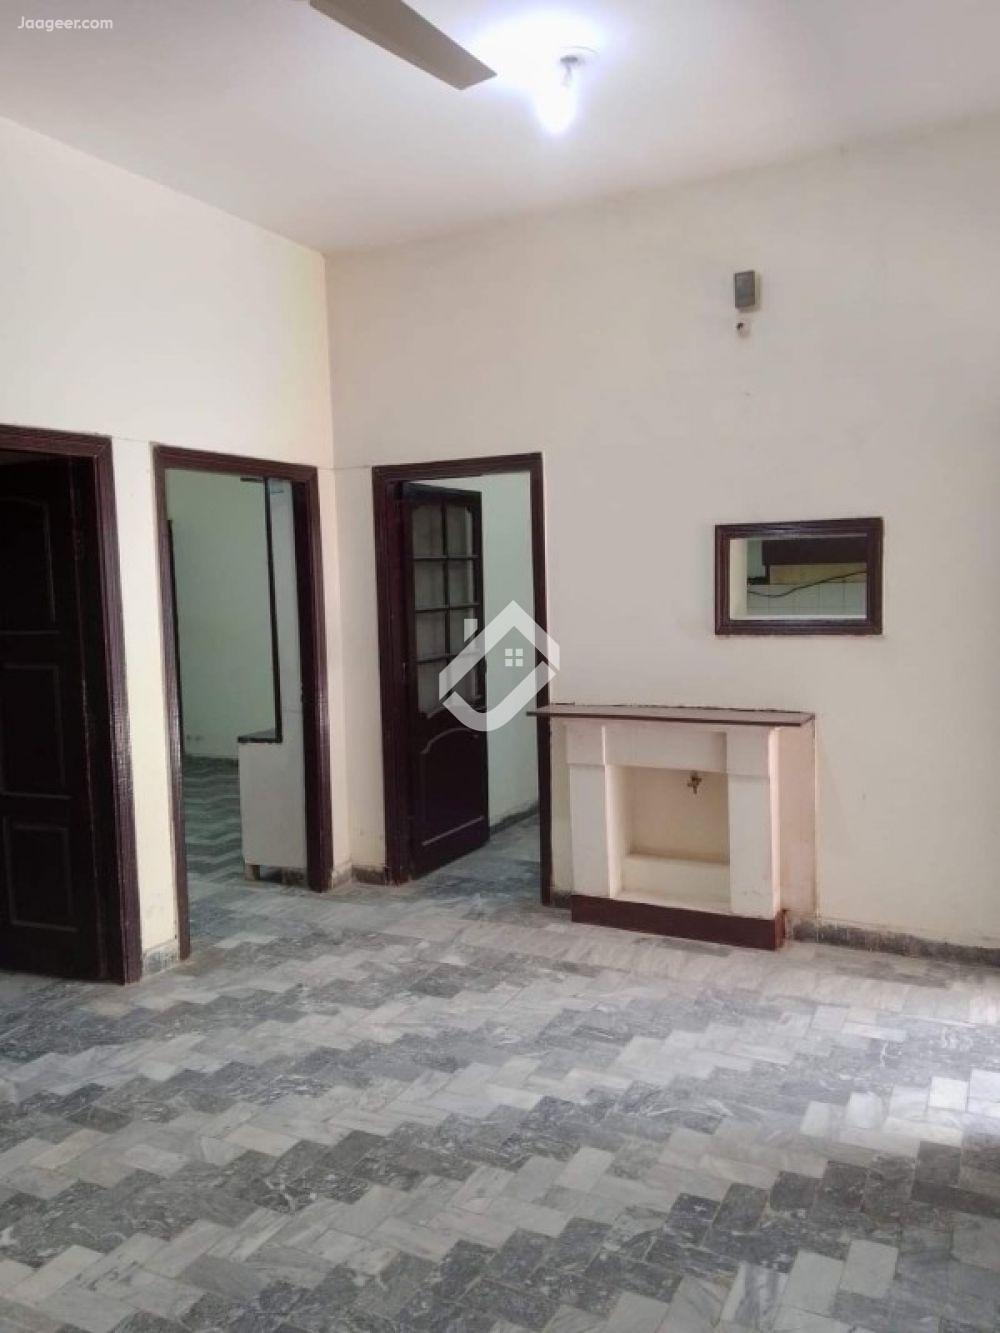 View  5 Marla Lower Portion House For Rent In Gulzar E Quaid in Gulzar E Quaid, Rawalpindi